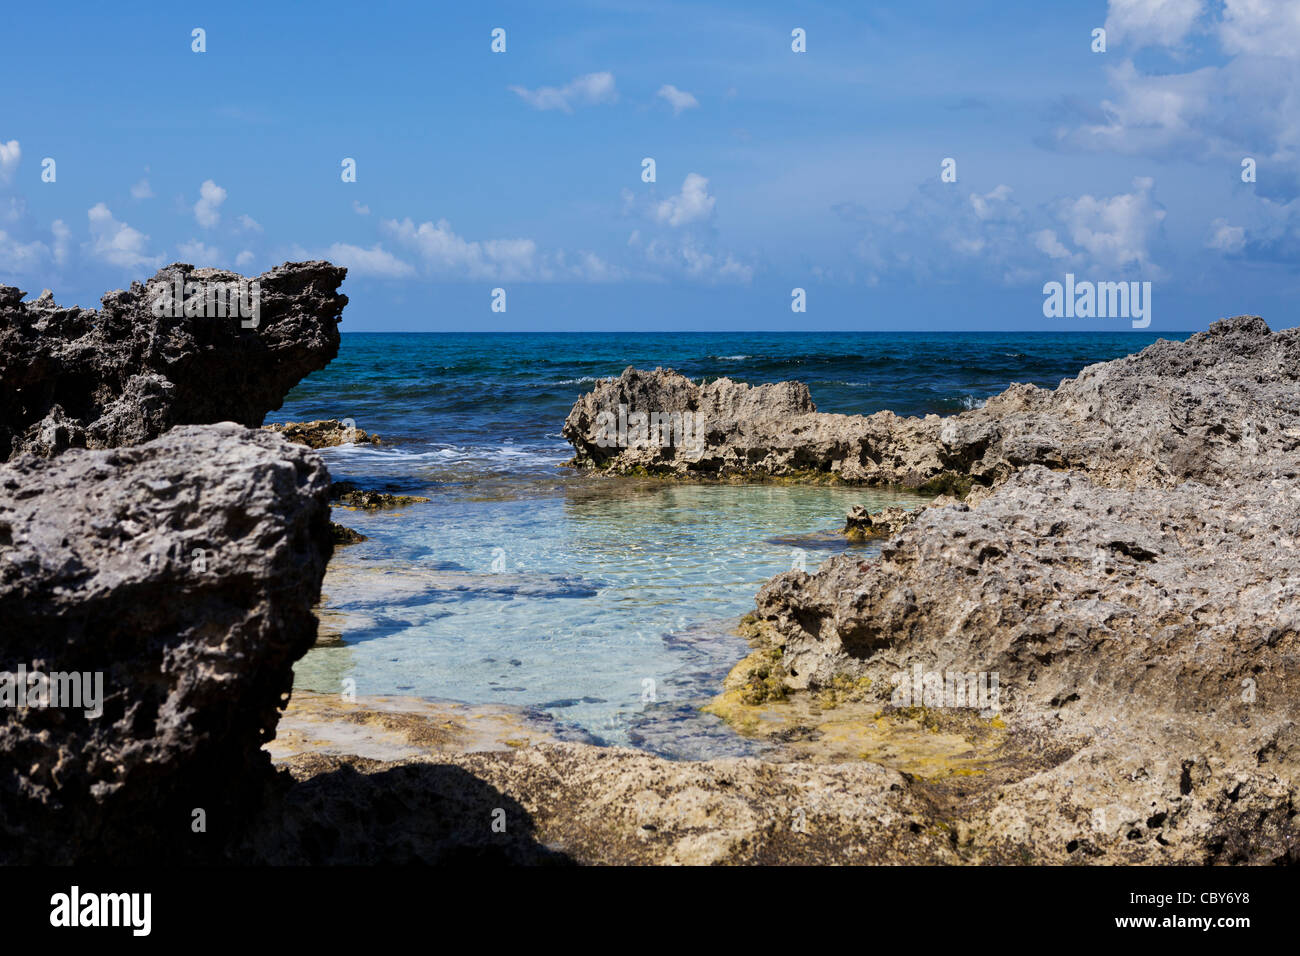 Rocky beach on Isla Mujeres, Mexico. Stock Photo